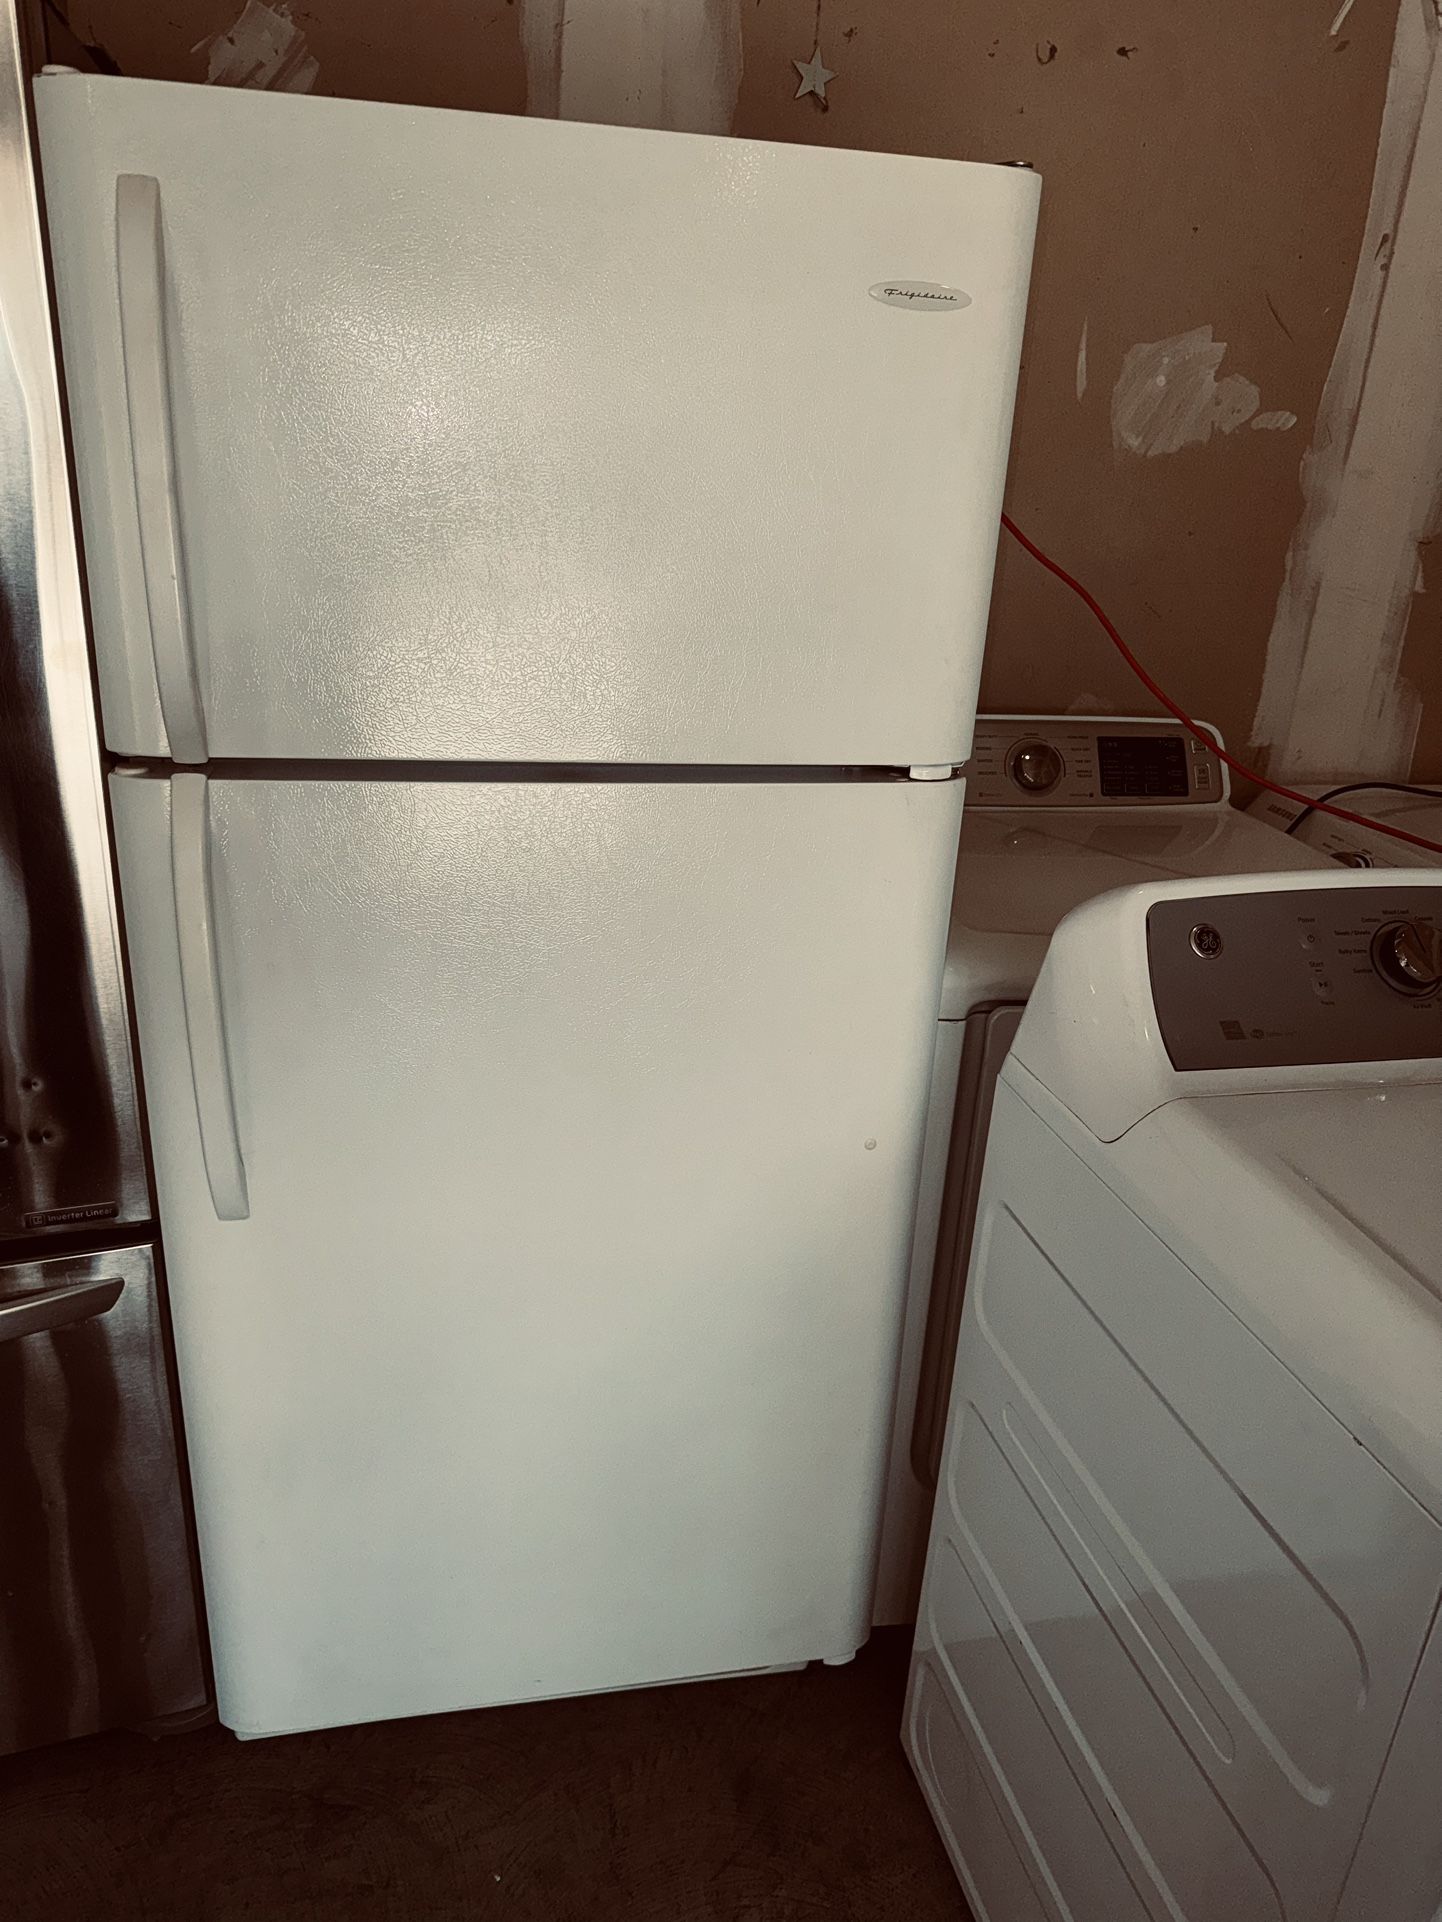 Refrigerador Frigidaire Works Perfec 3 Month Warranty We Deliver 